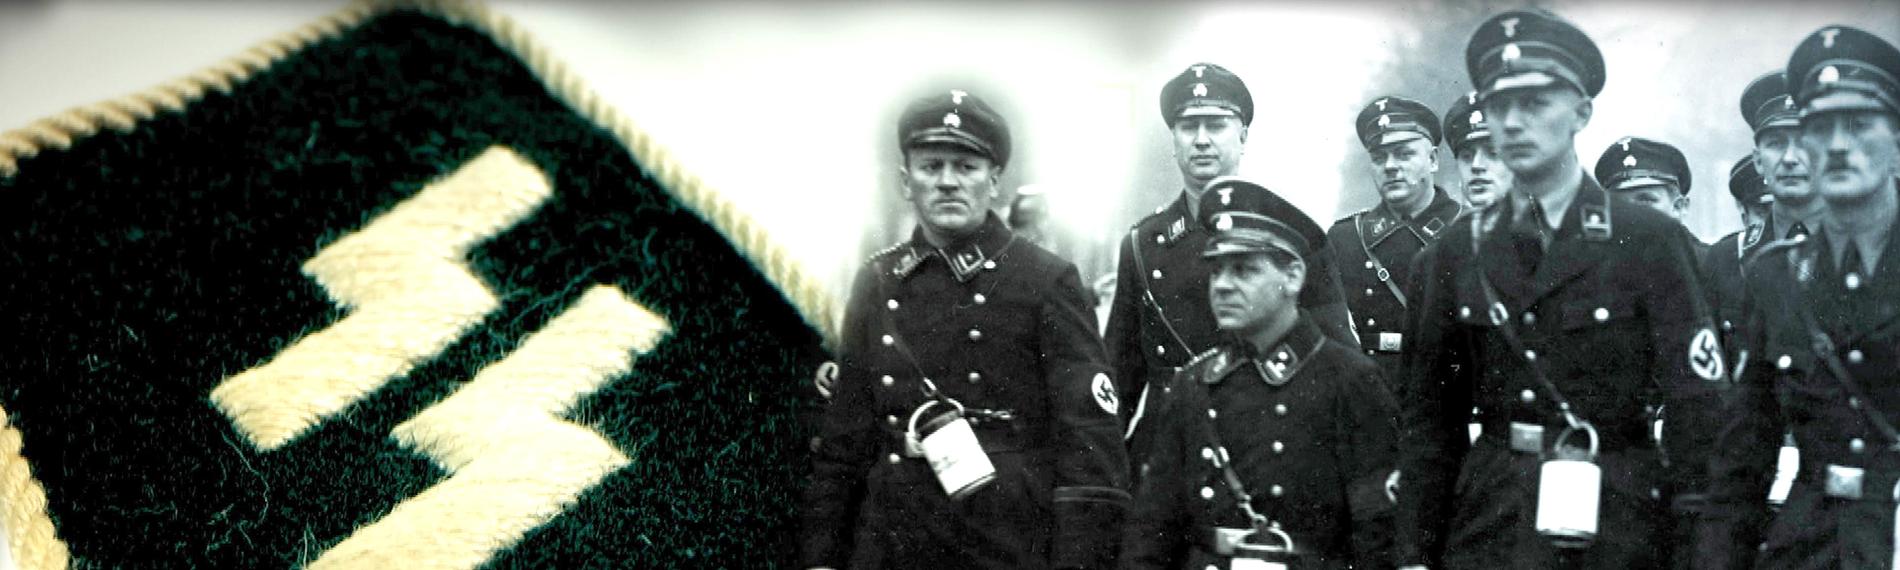 Fotocollage. Rechts mehrere SS-Soldaten, links ein Kragenspiegel einer SS-Uniform.